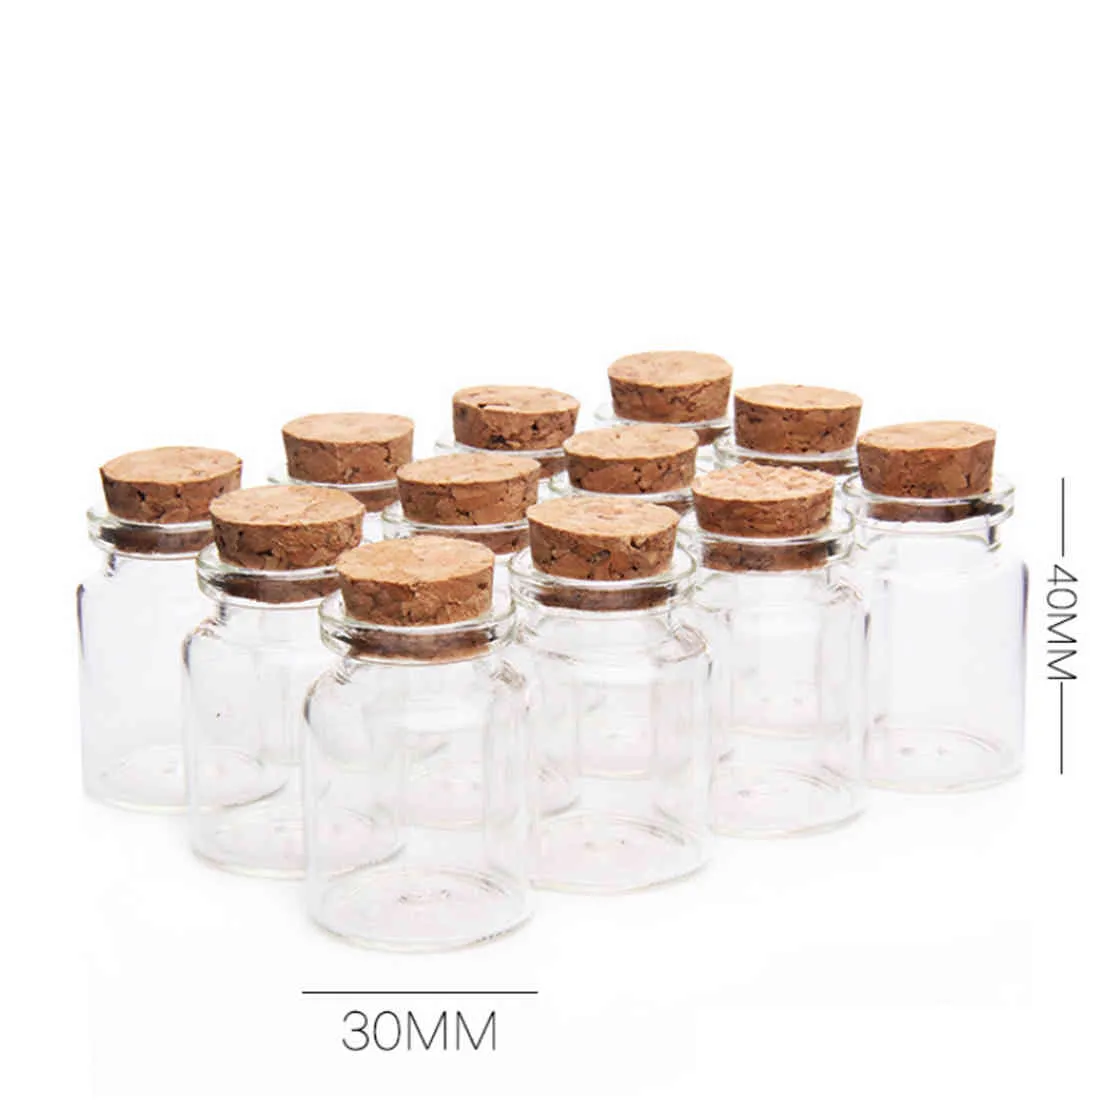 Nouveau / set 30 * 40mm 15ml mini bouteilles en verre bouteille vide échantillon bac de stockage pots avec bouchons en liège - transparent 210330